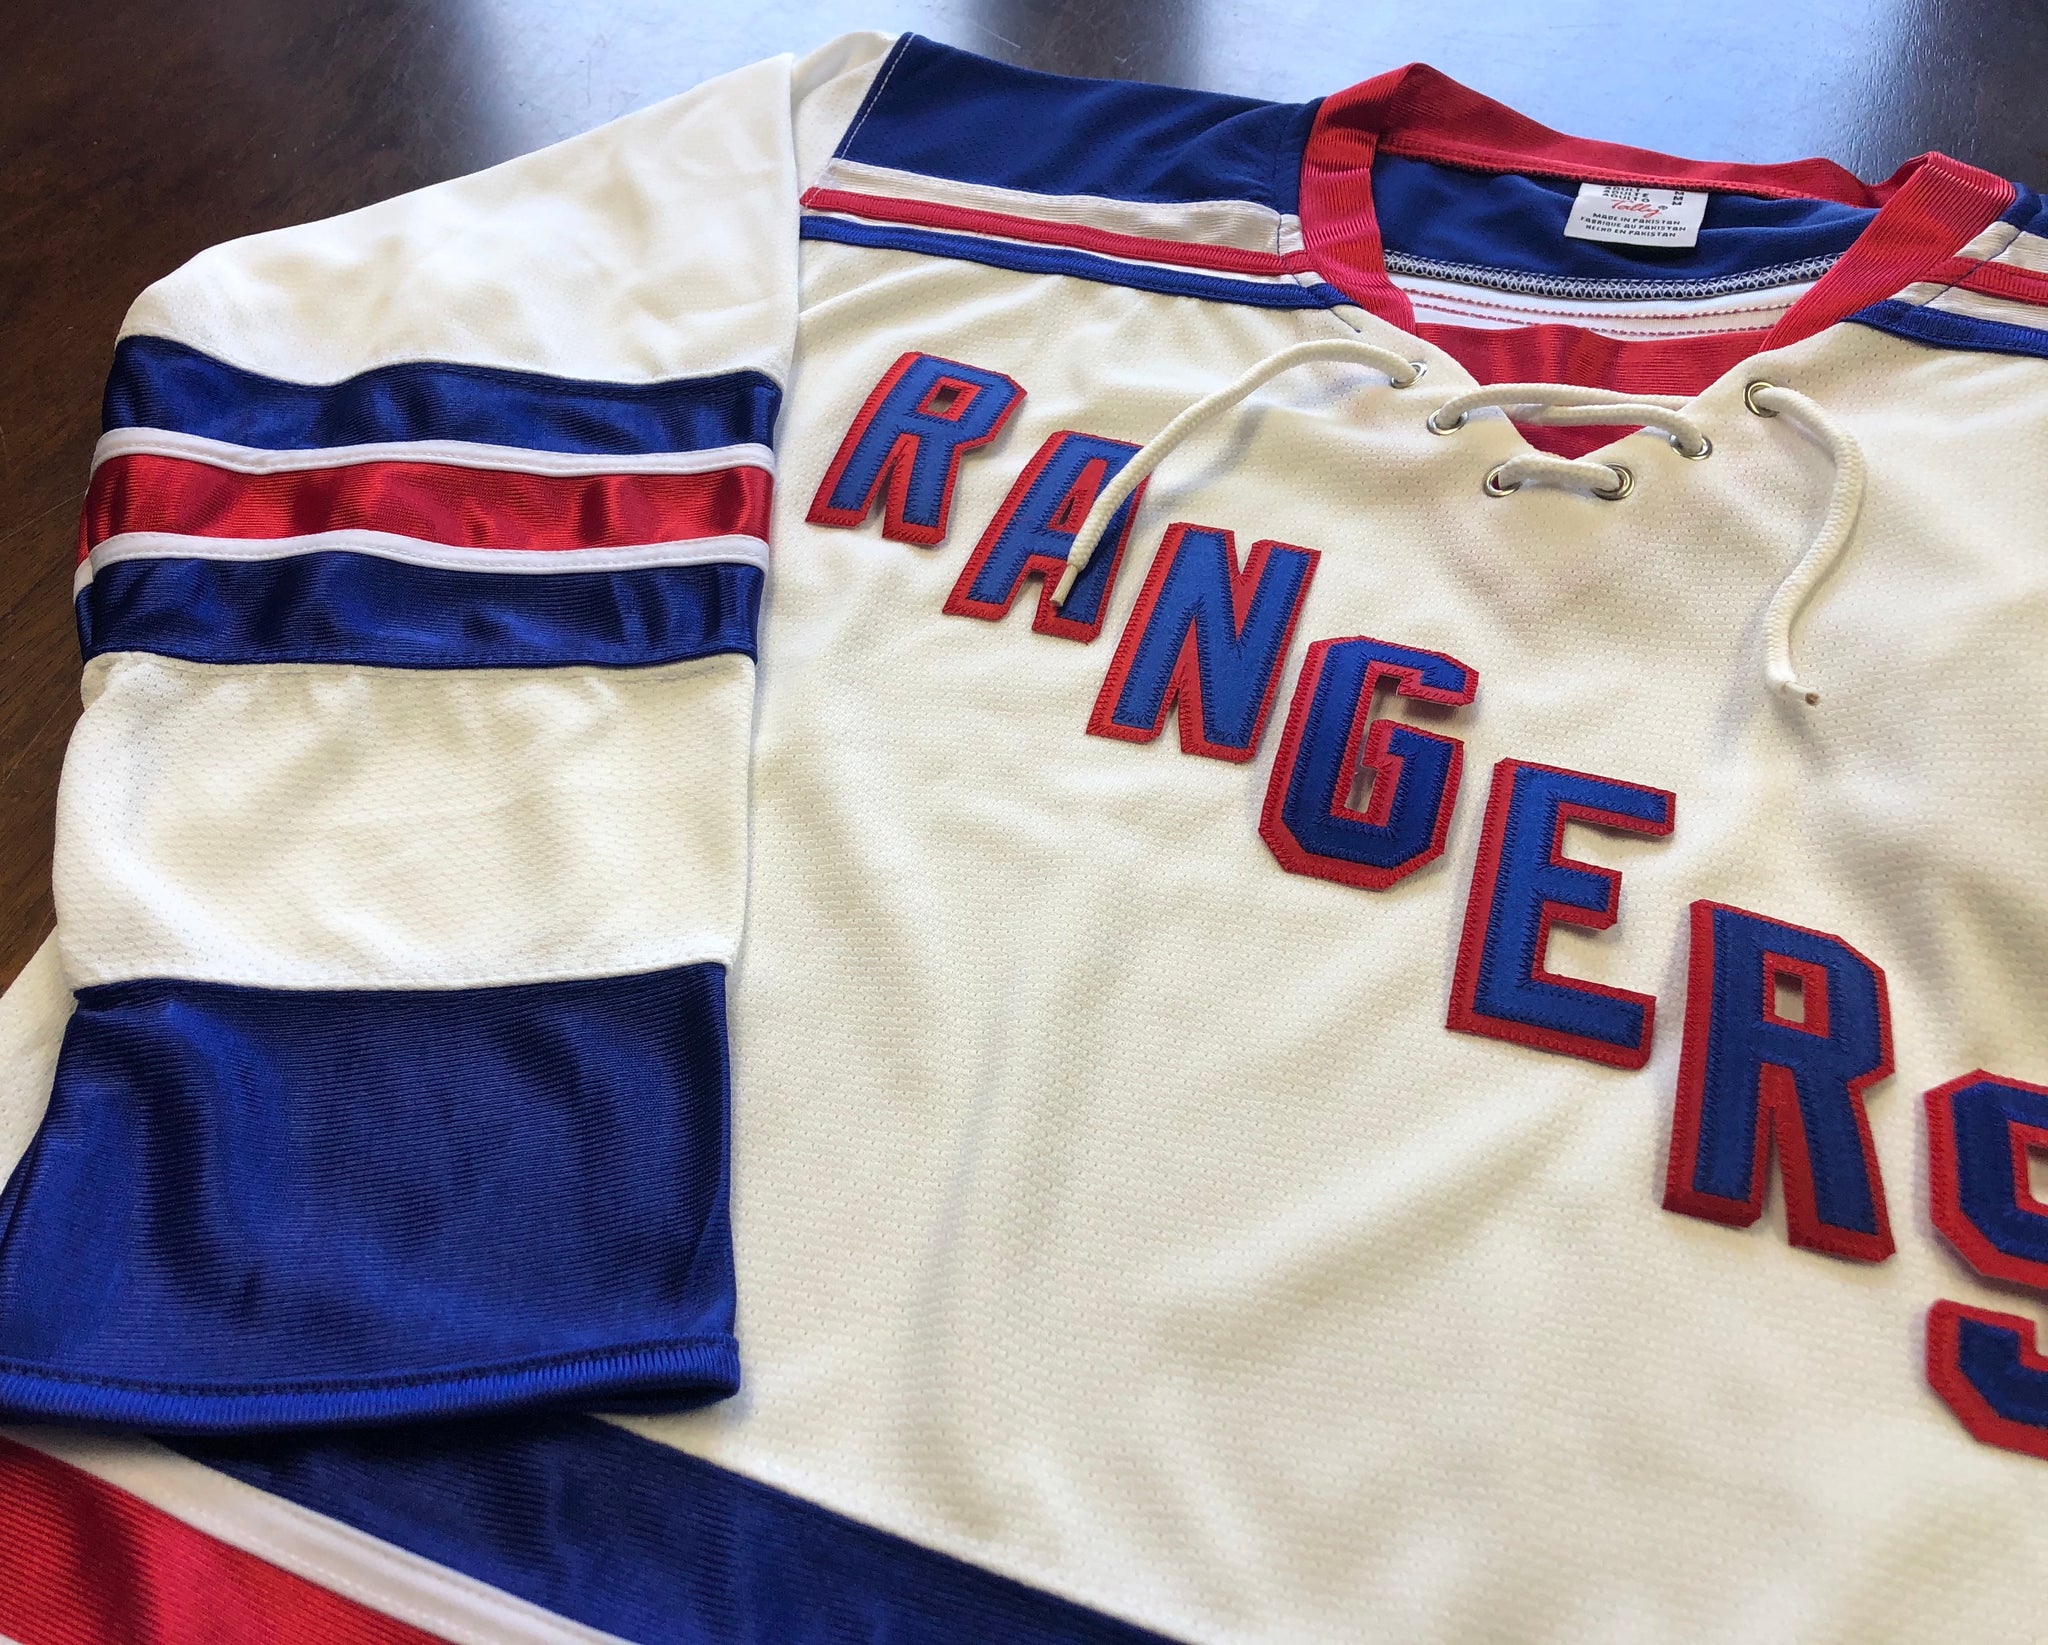 Custom Hockey Jerseys with Rangers in Twill Letters – Tally Hockey Jerseys